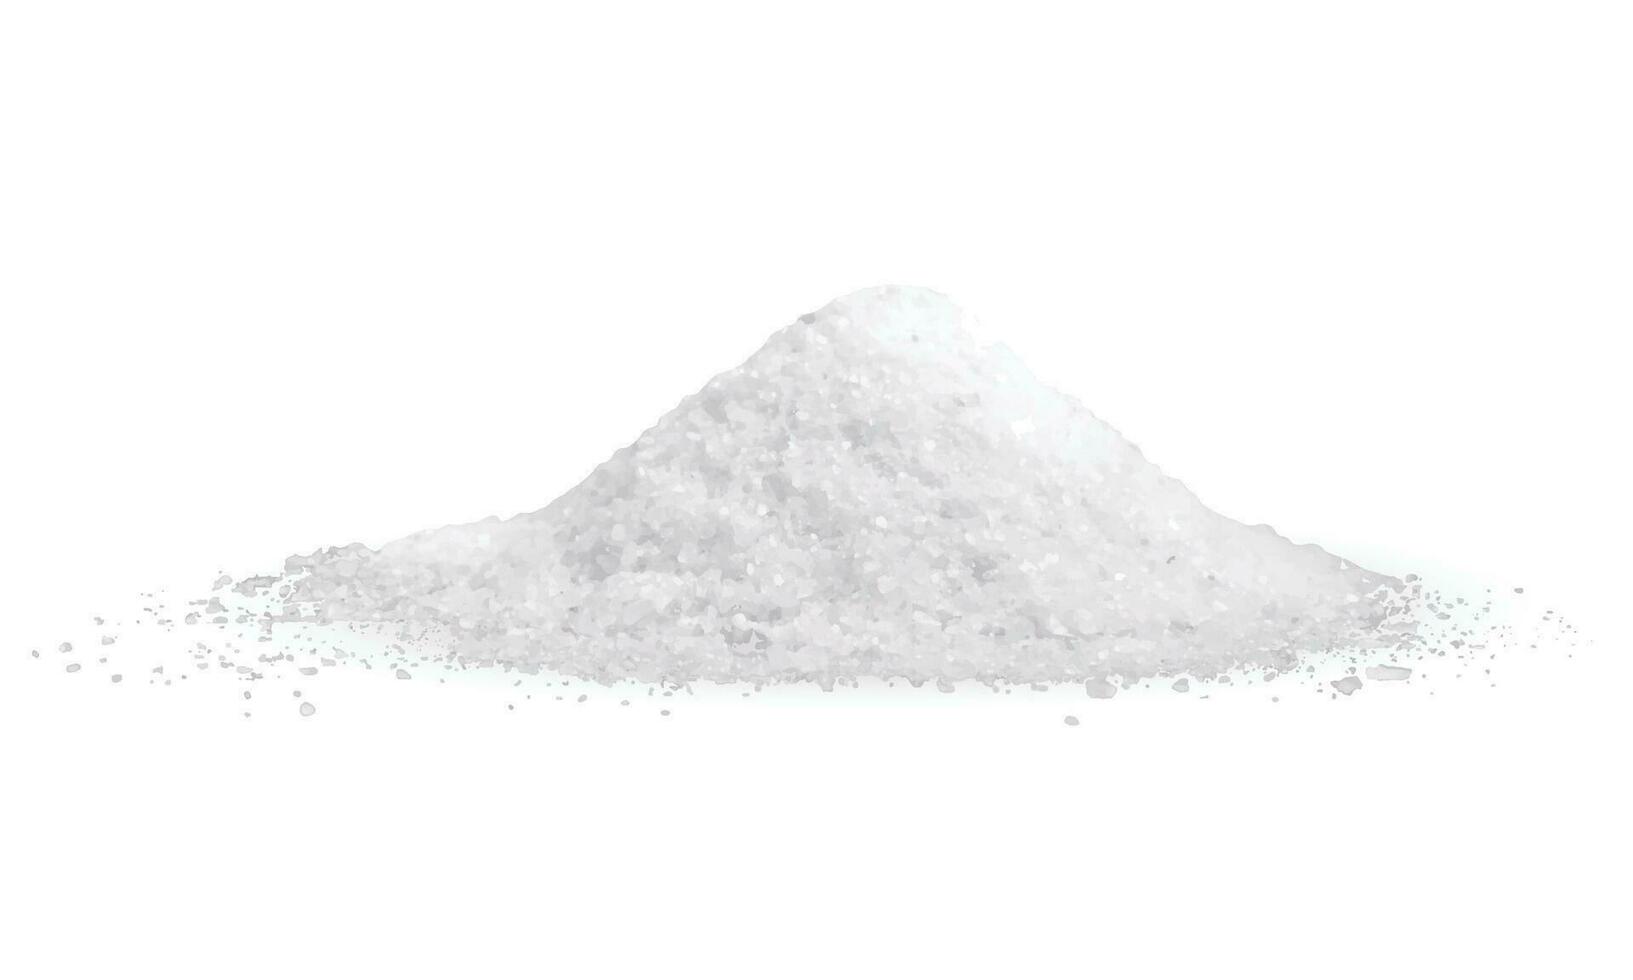 vektor pålar av salt och socker isolerat på vit bakgrund